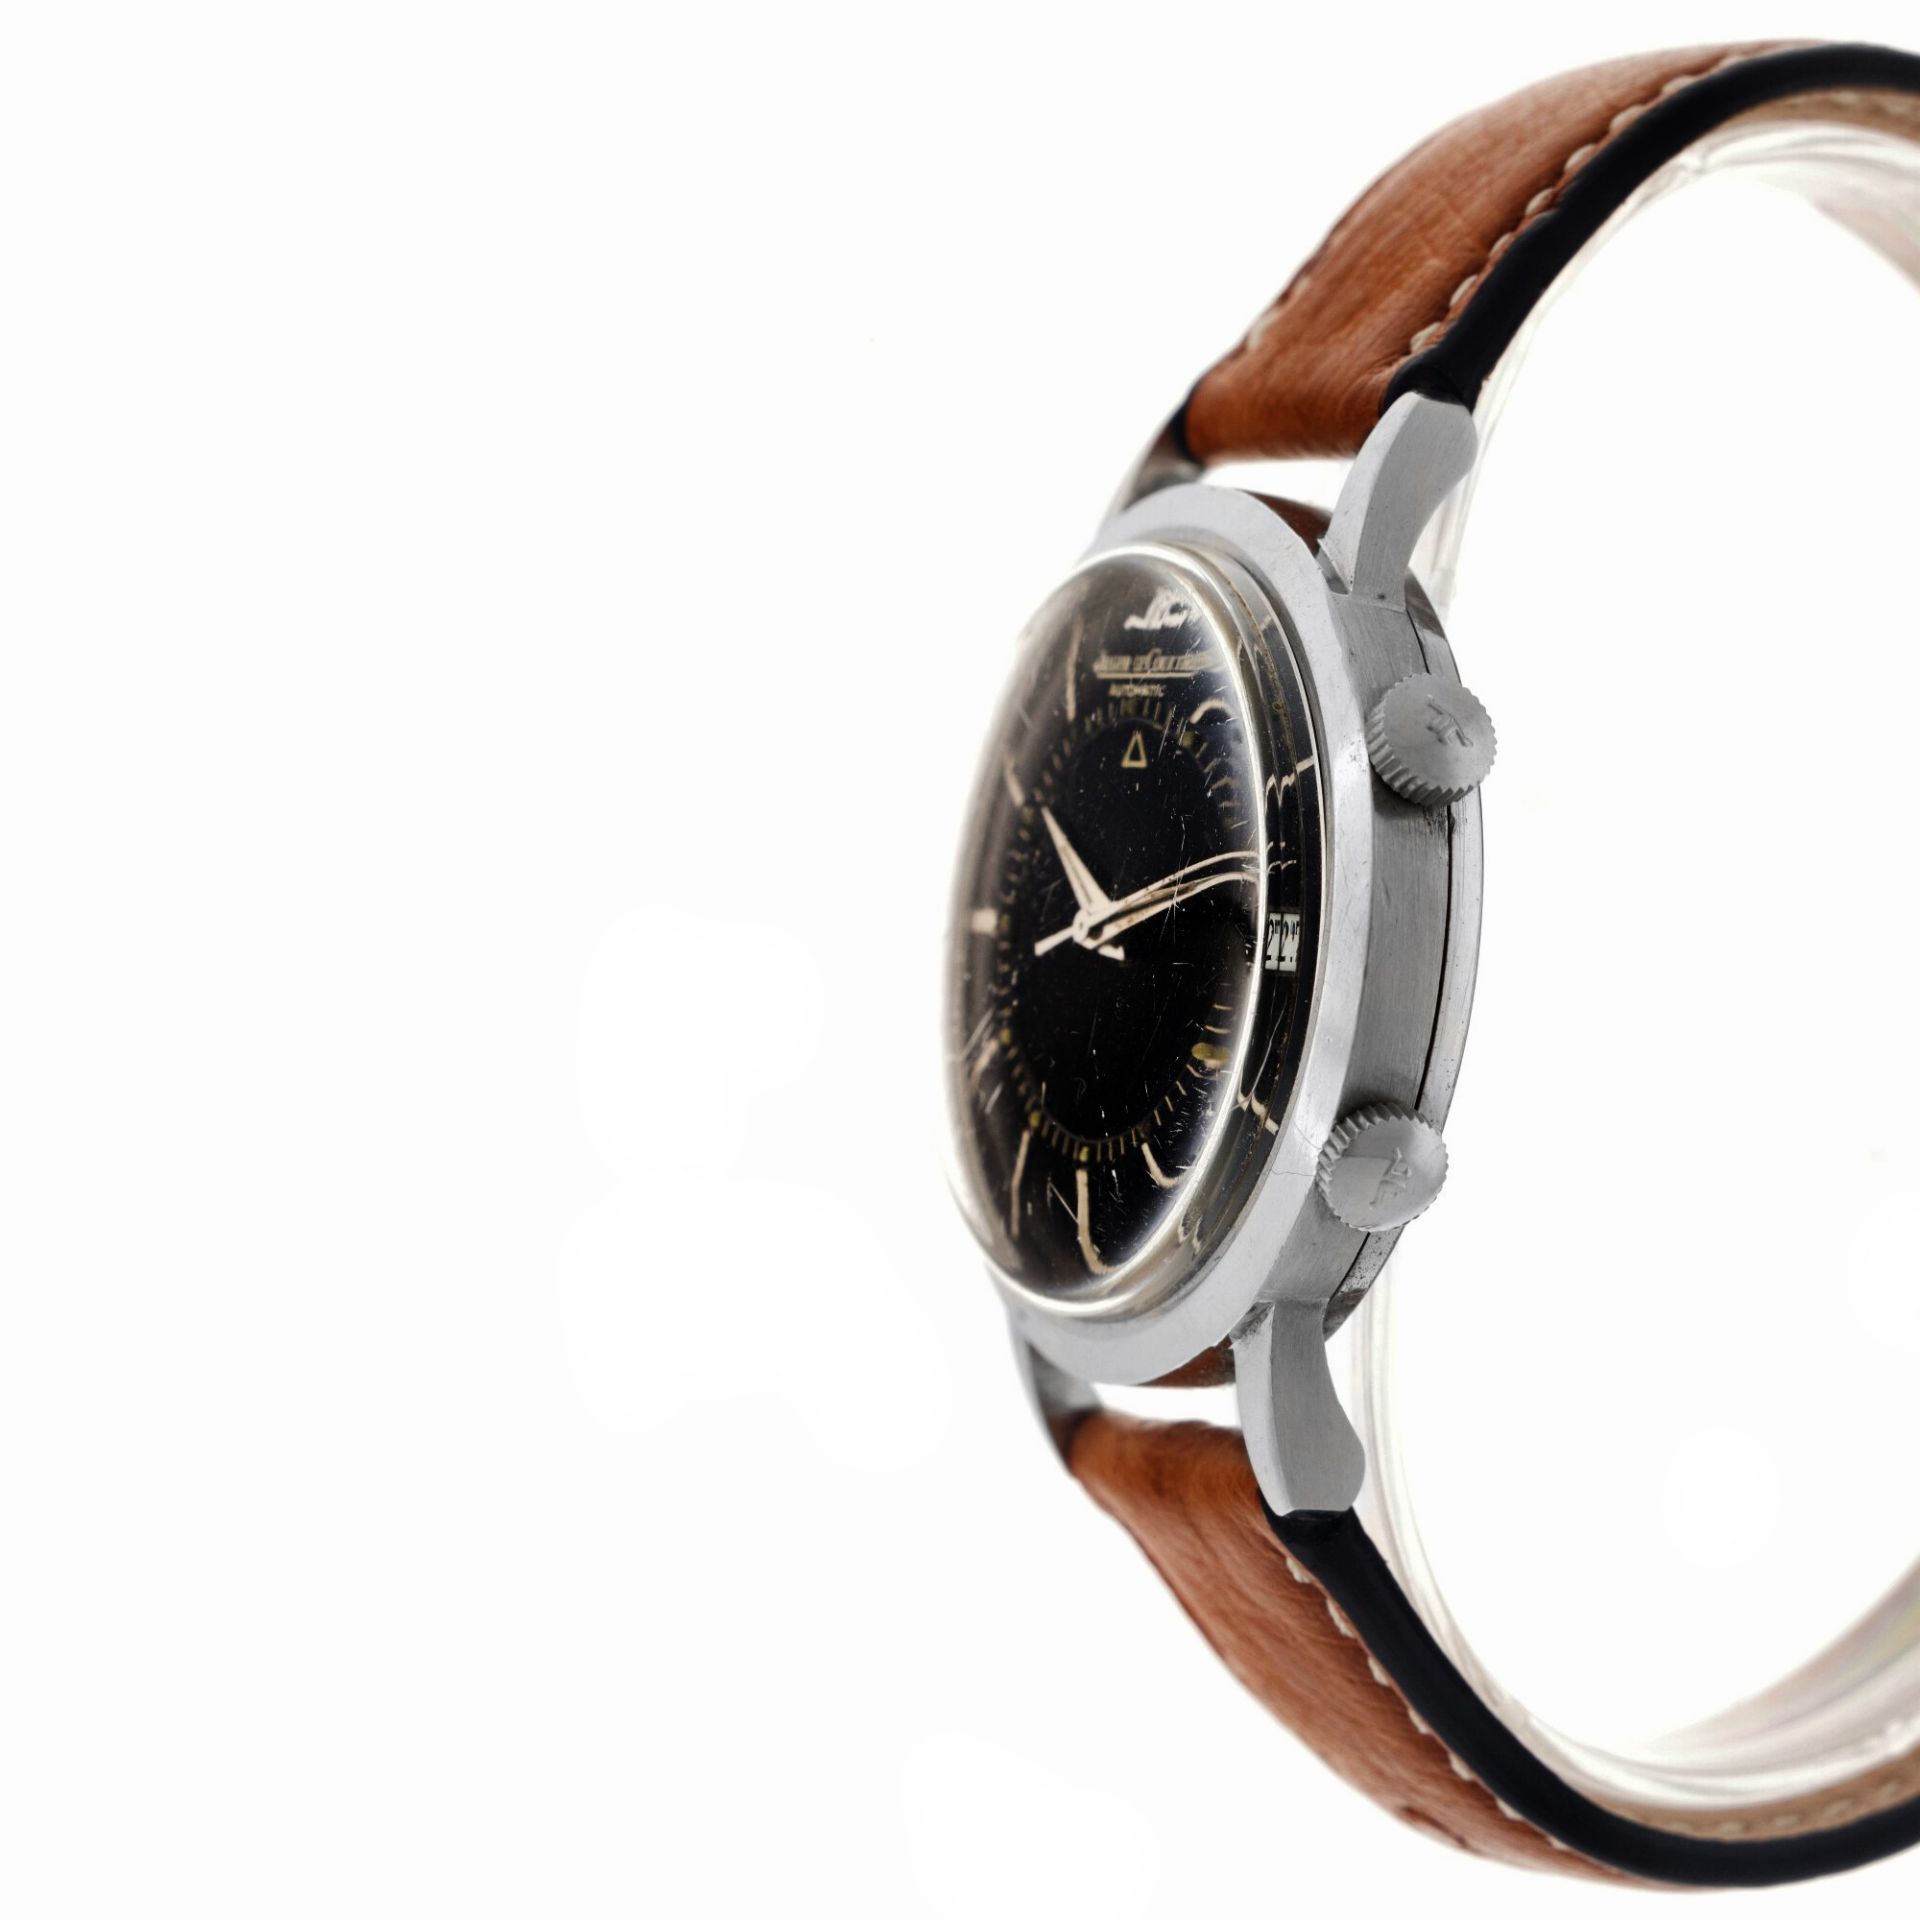 Jaeger-LeCoultre Memovox E855 - Men's wristwatch. - Image 5 of 5